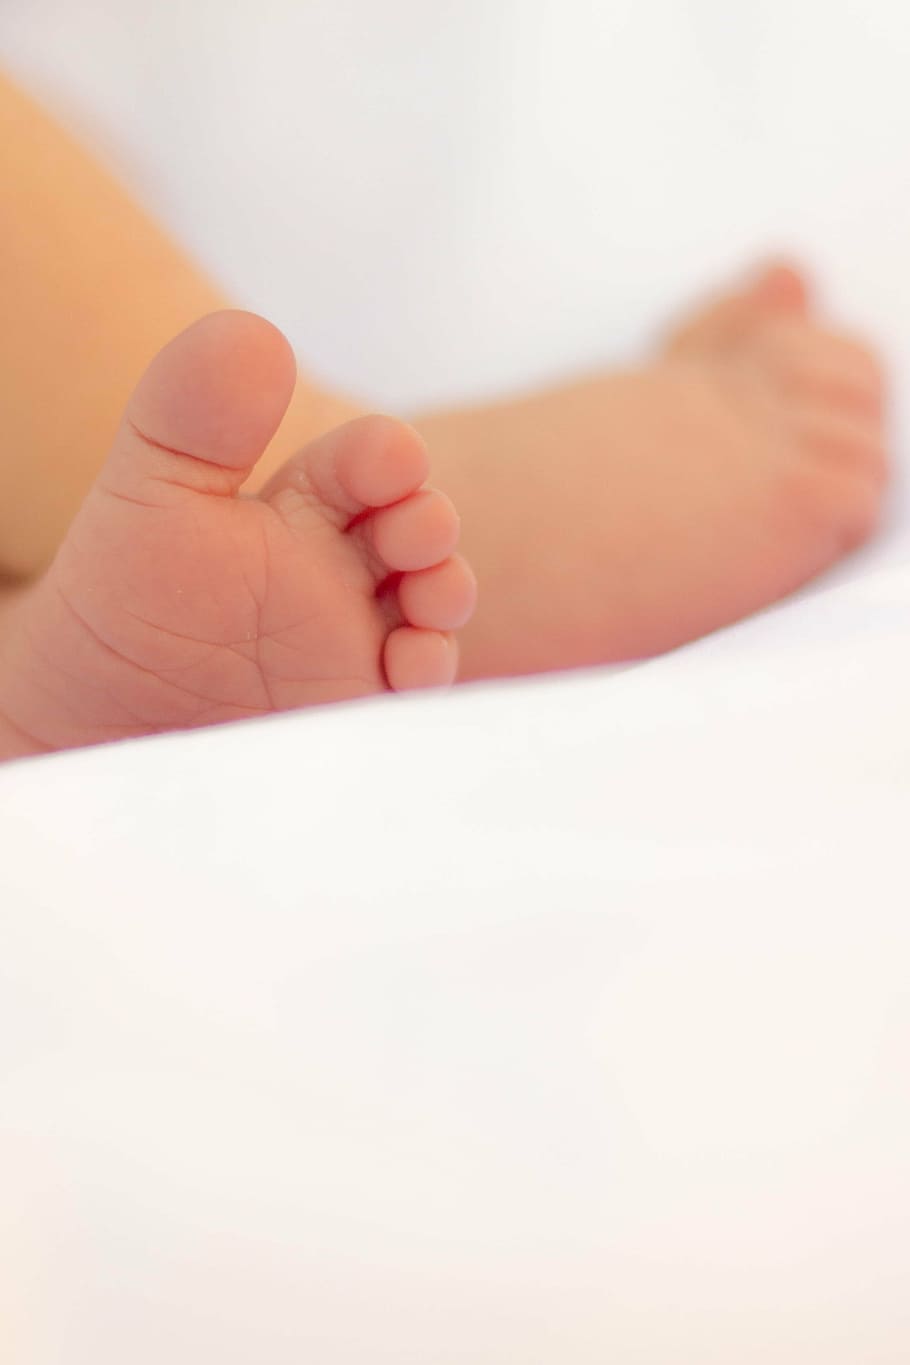 pies del bebé, vida, personas, humano, bebé, niño, niño pequeño, pies, nacimiento, humano Mano